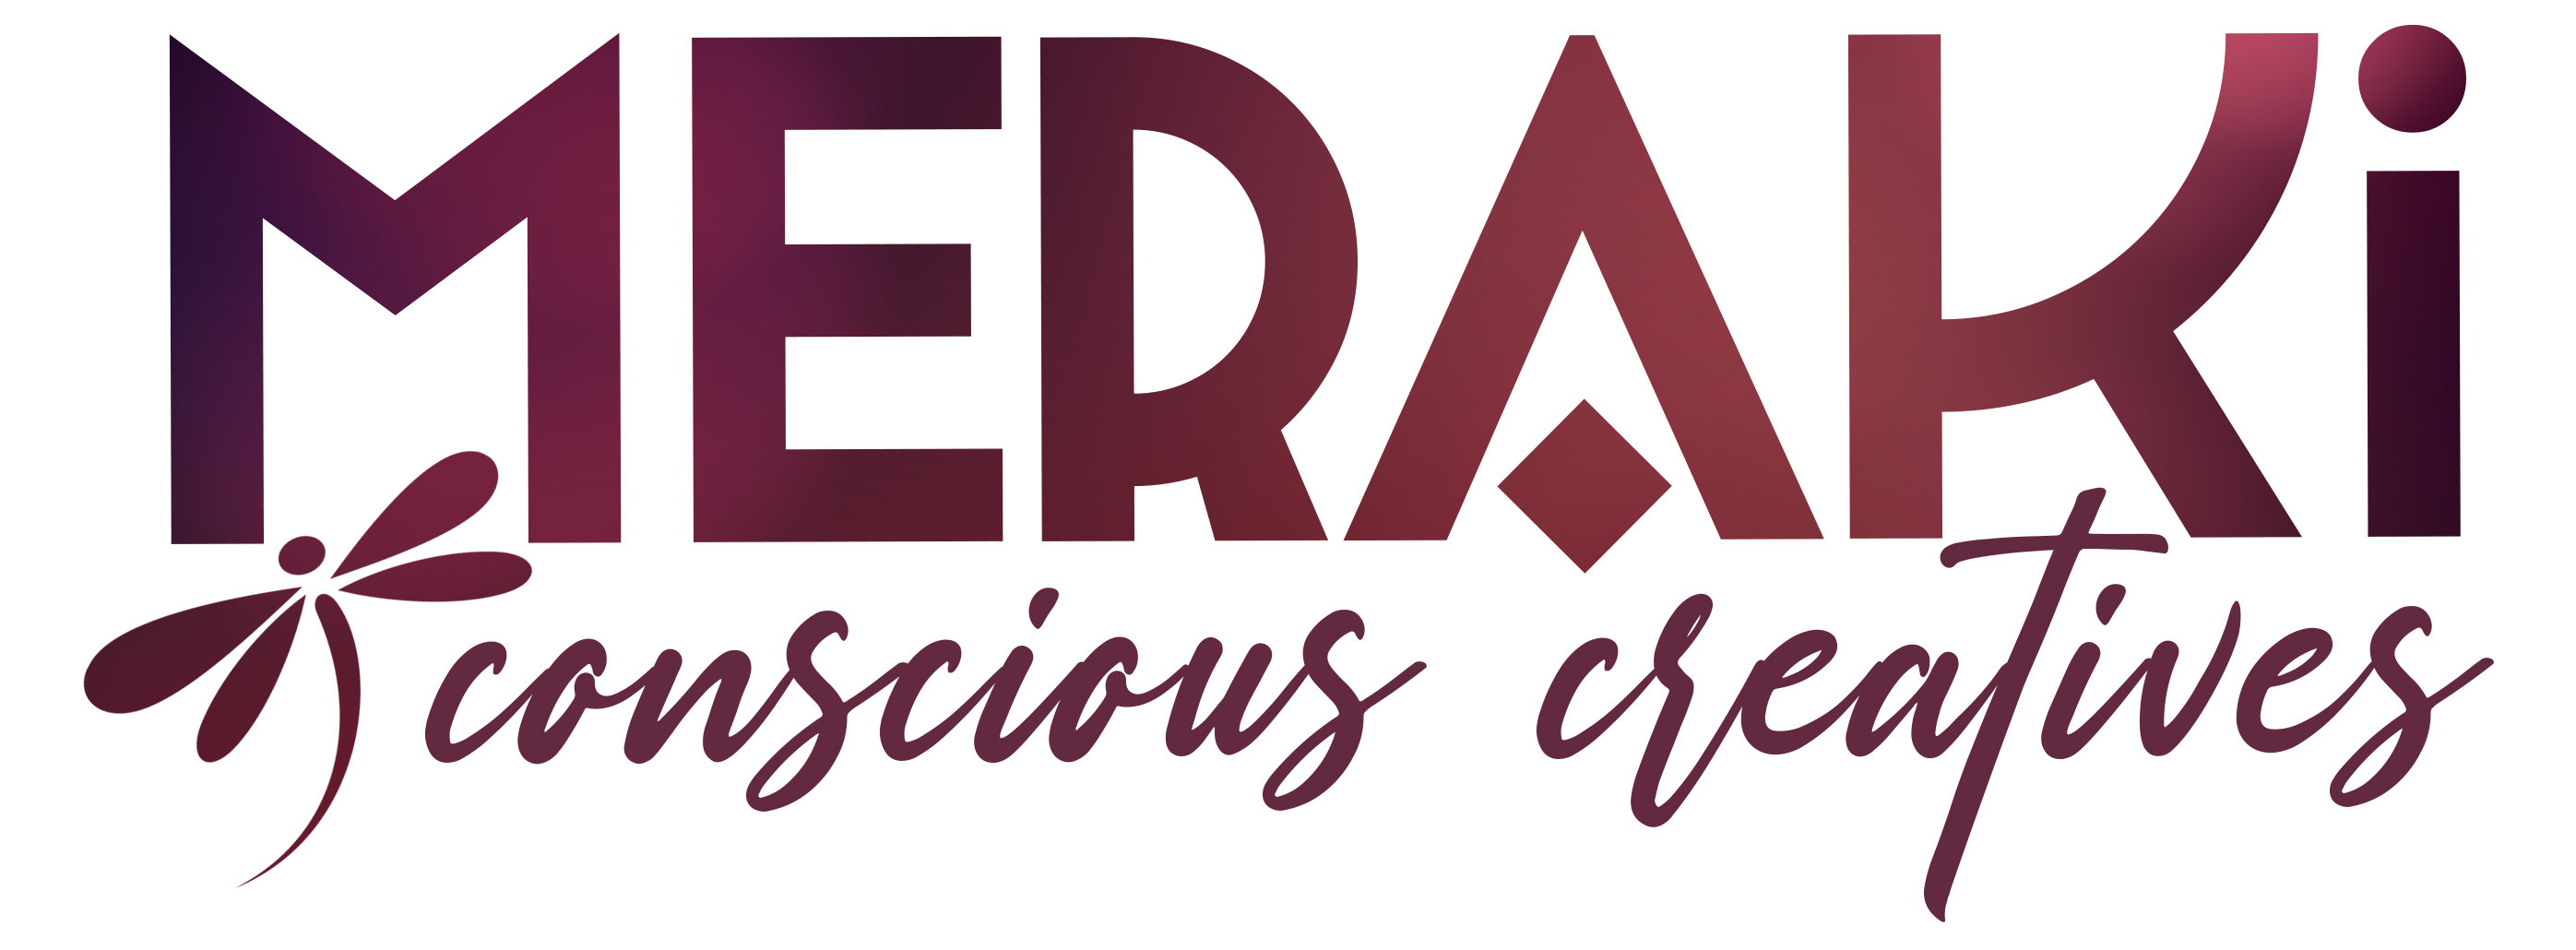 Meraki Conscious Creatives Logo 